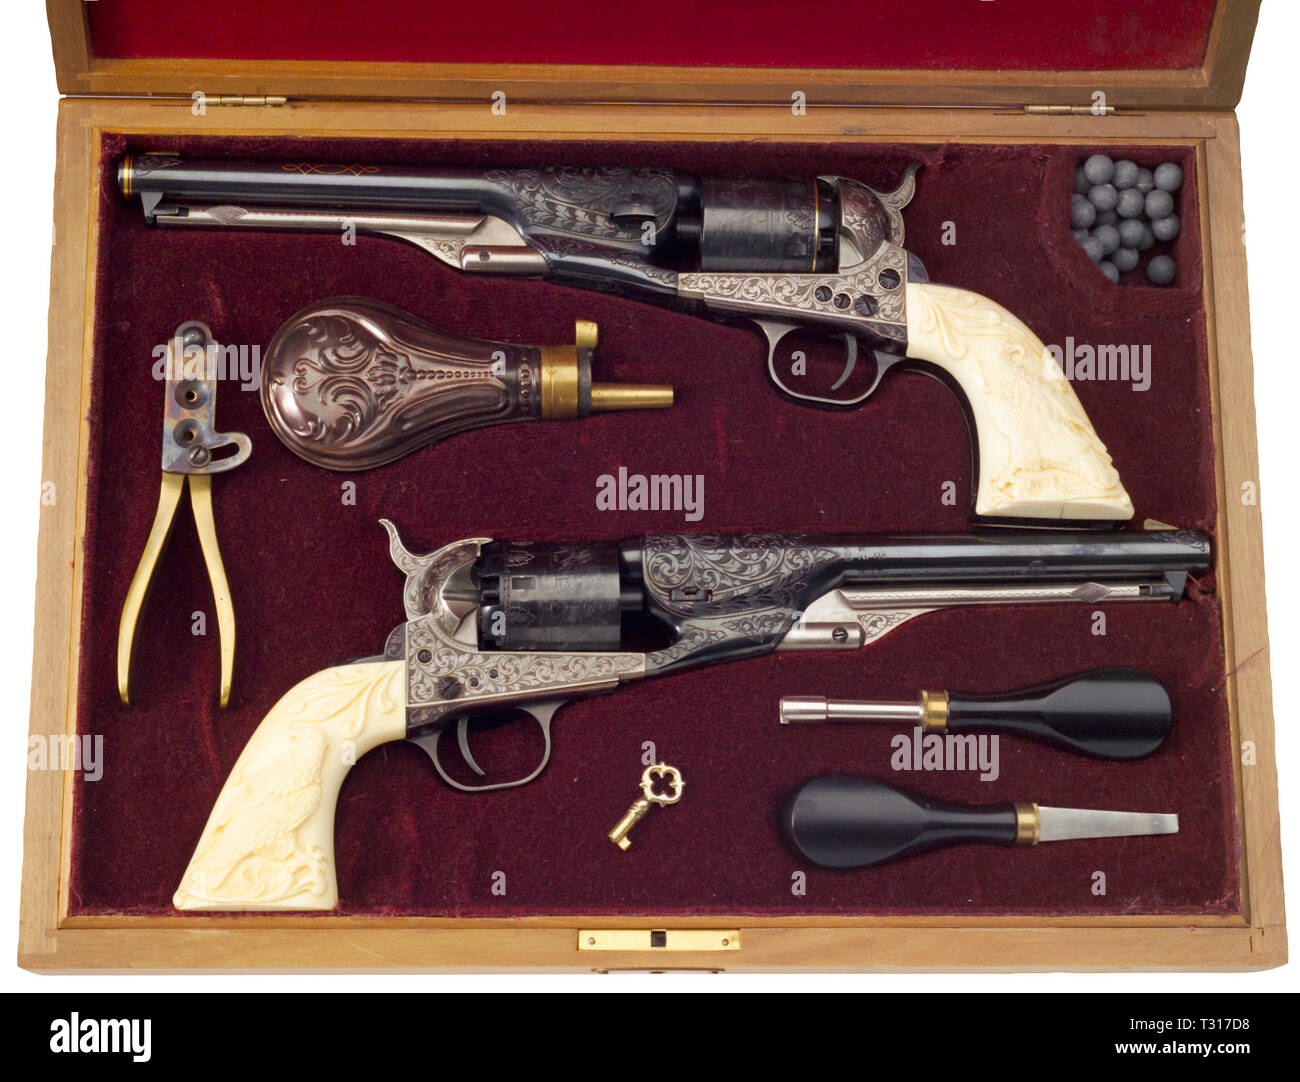 Armi di piccolo calibro, revolver Colt Navy 1861, replica, Additional-Rights-Clearance-Info-Not-Available Foto Stock